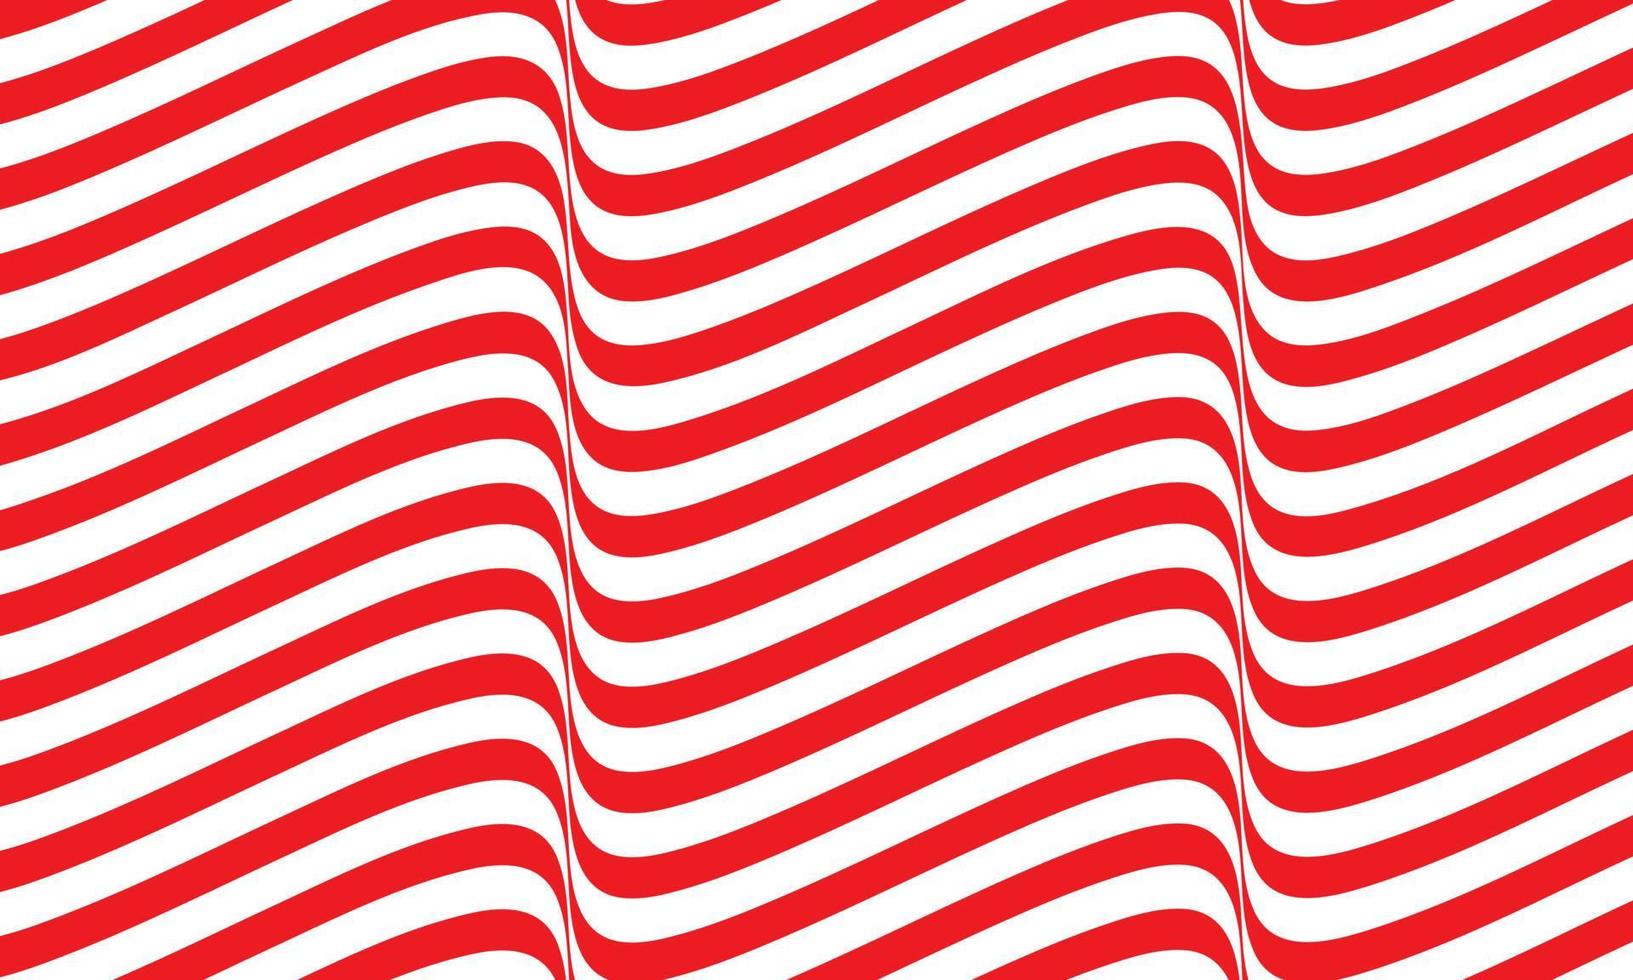 sfondo astratto a righe in rosso e bianco con motivo a linee ondulate. vettore